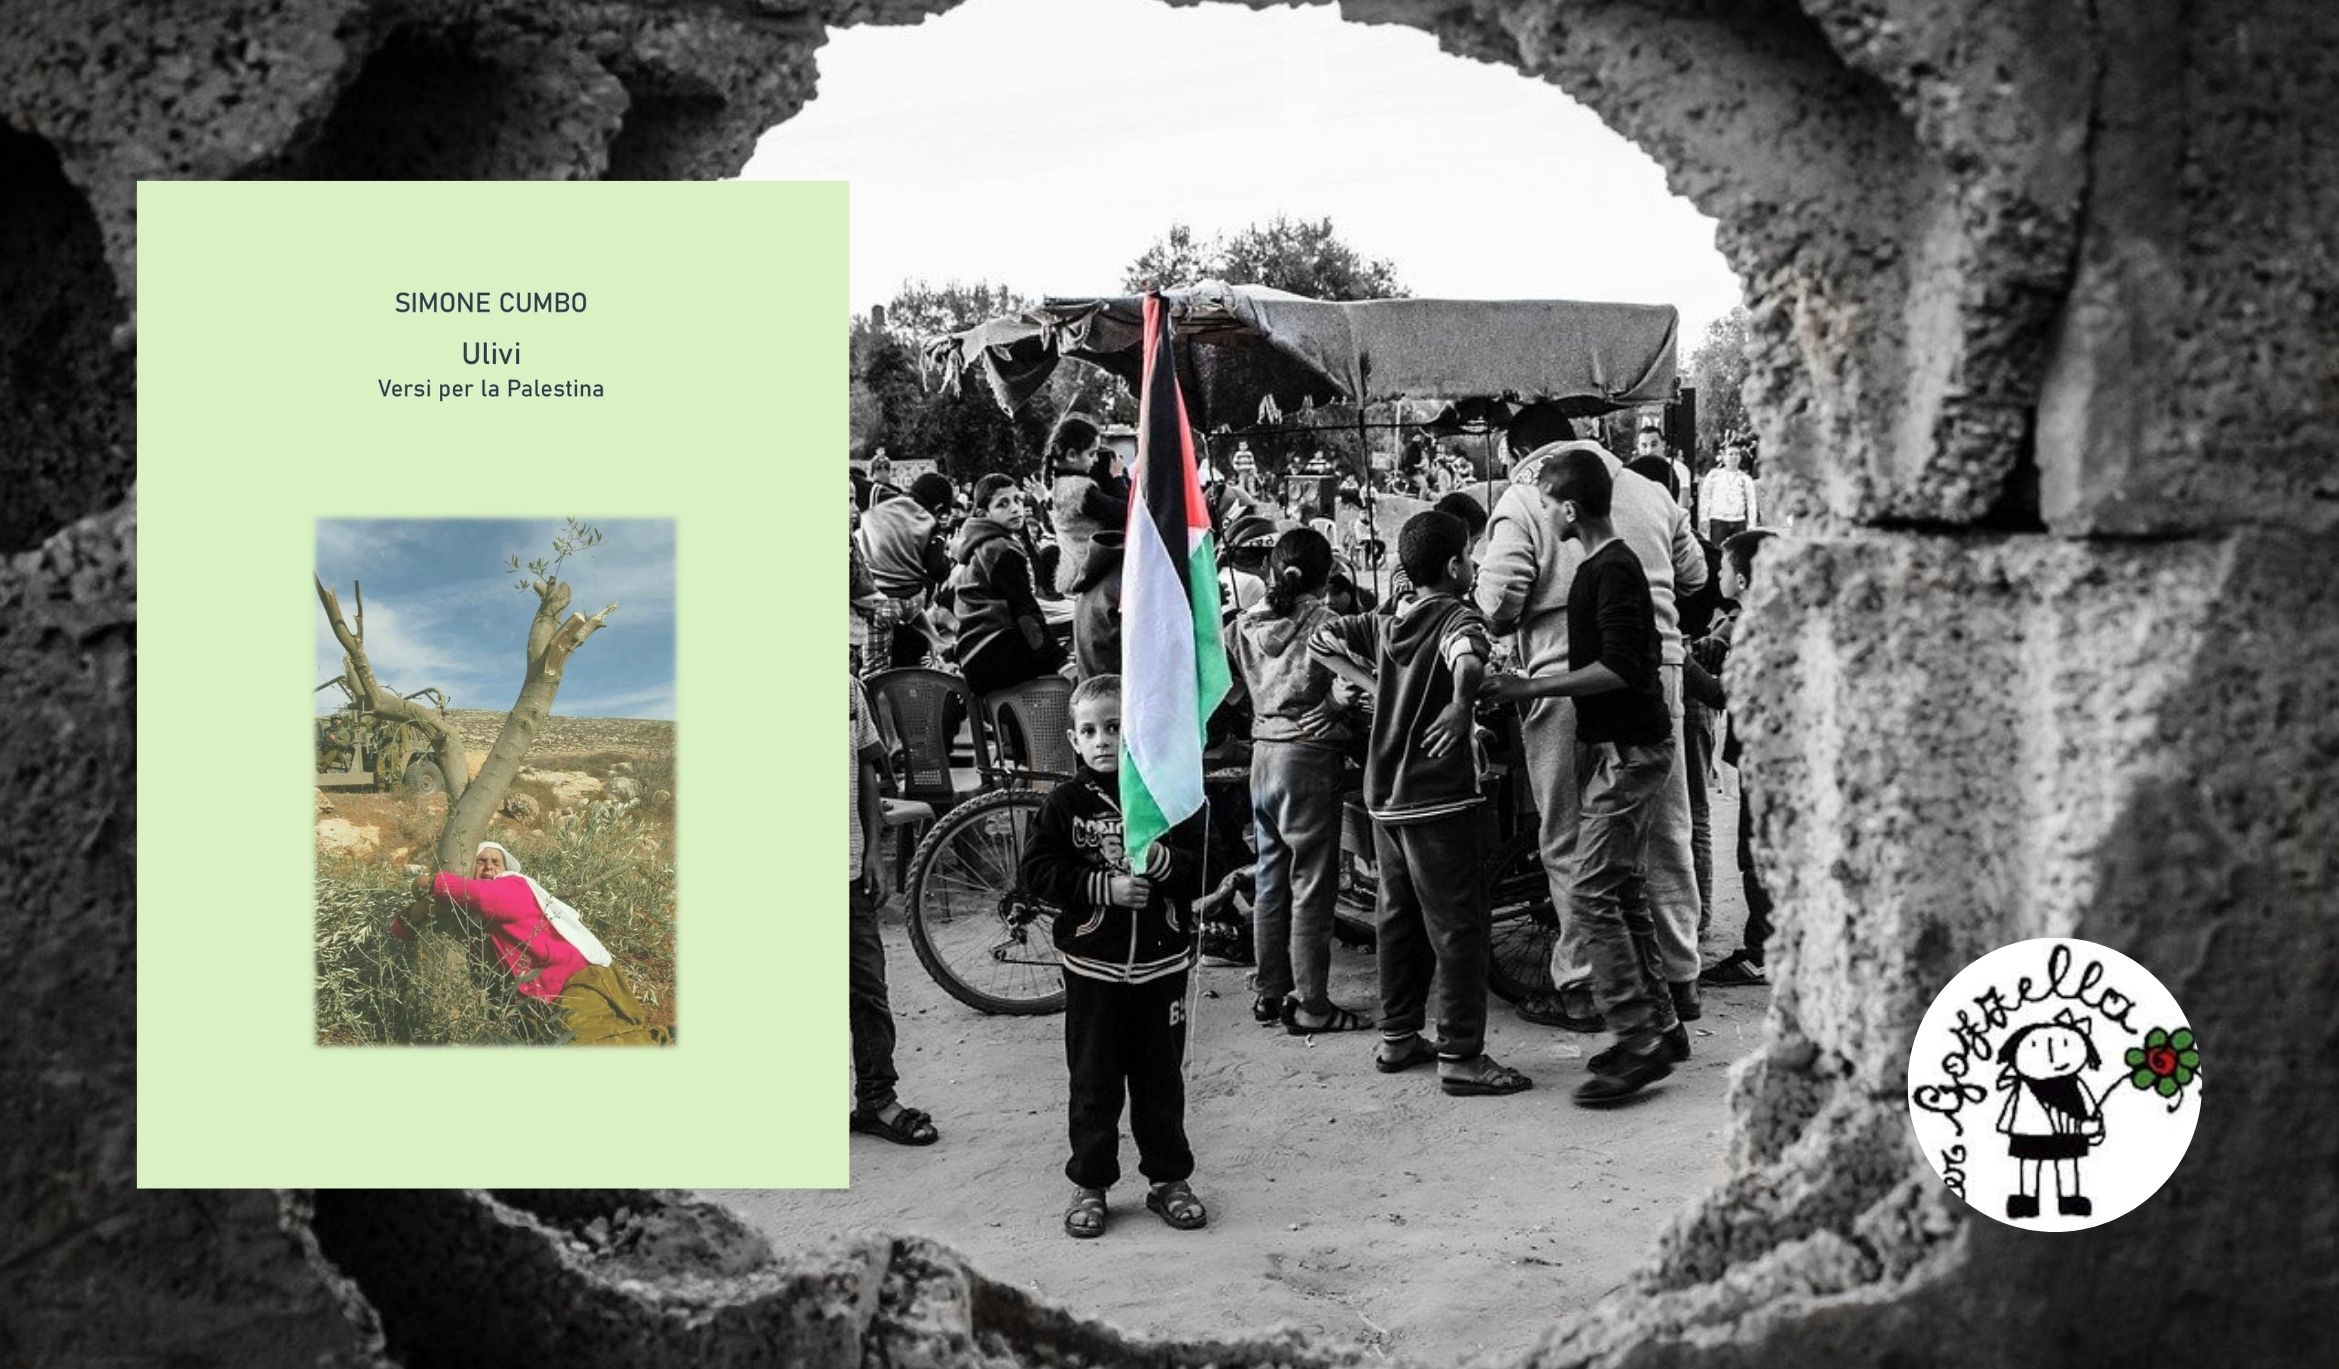 Ulivi - Versi per la Palestina 
a sostegno di Gazzella Onlus